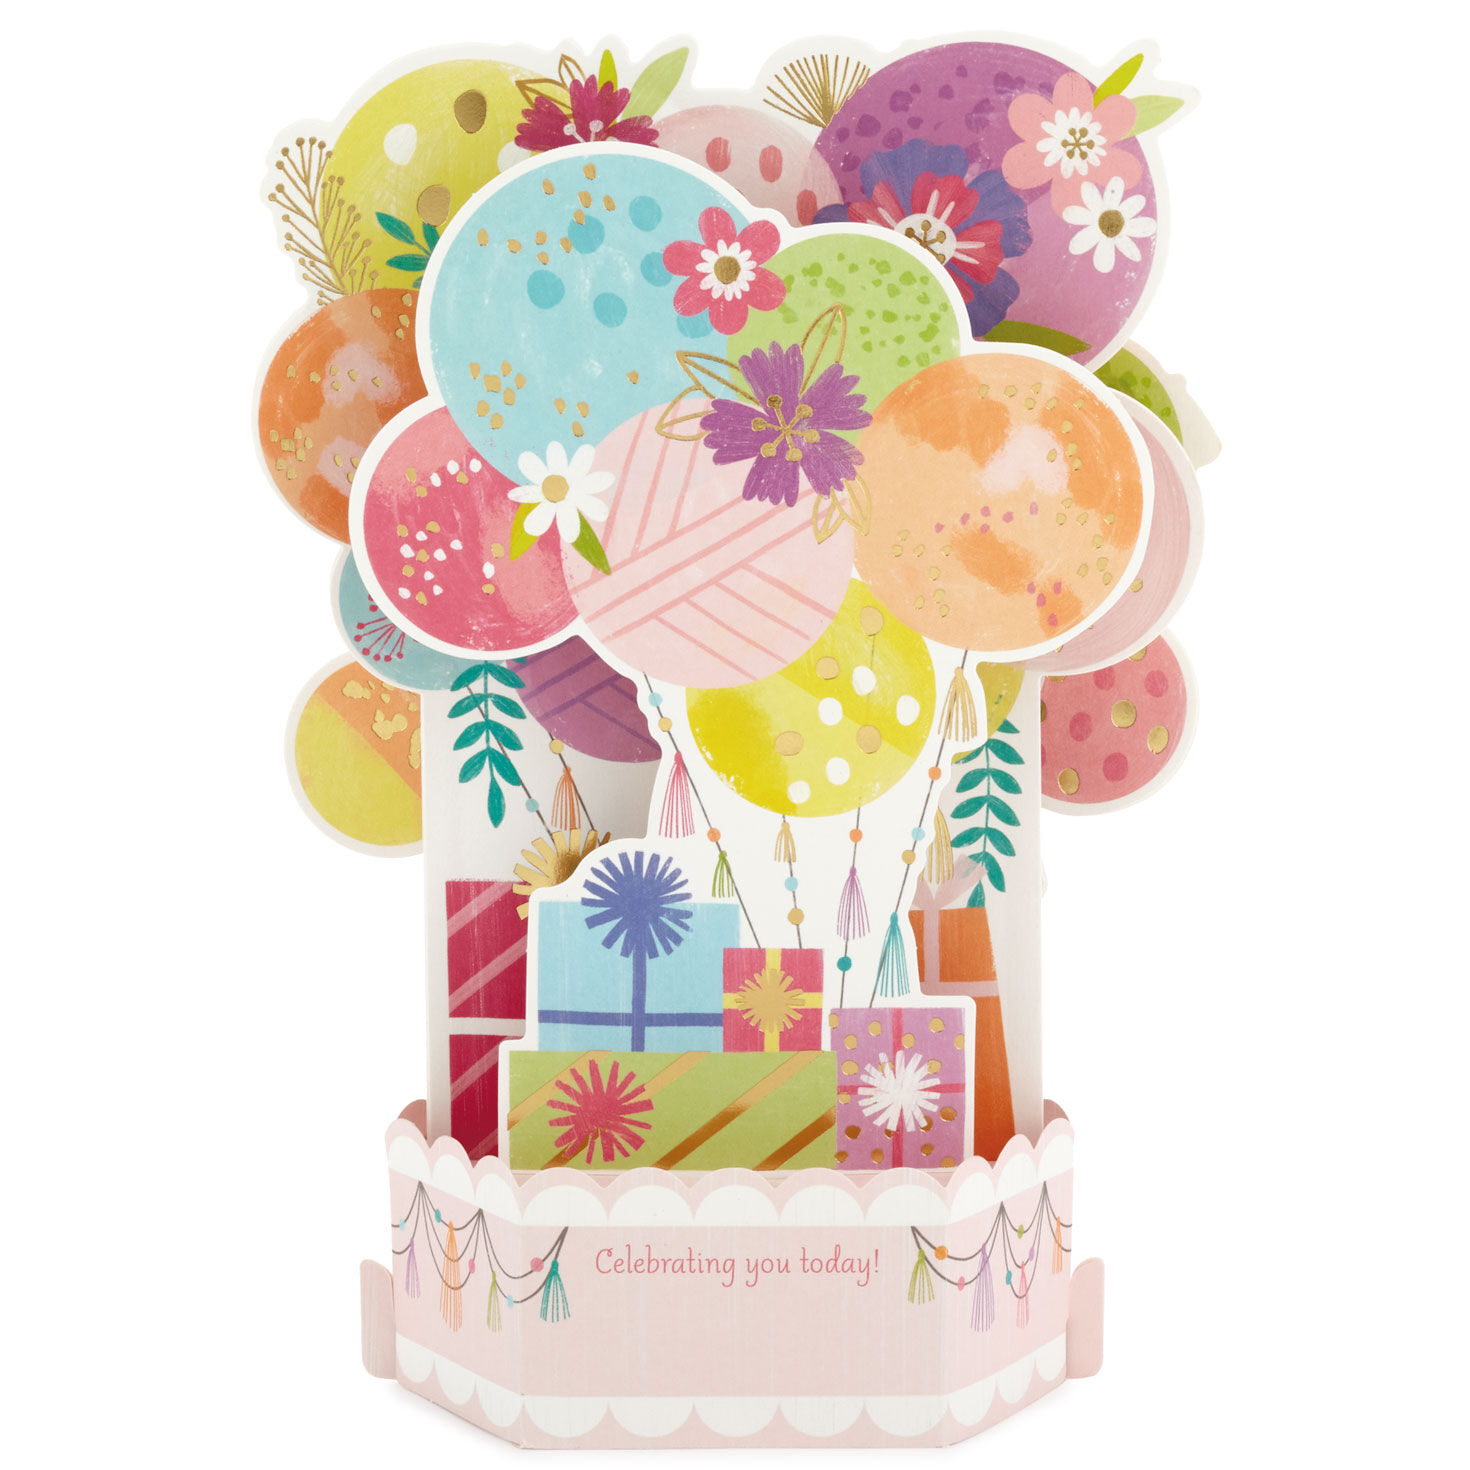 Details about   NEW Hallmark Paper Wonder Happy Birthday Pop-Up Card Lights & Sound 